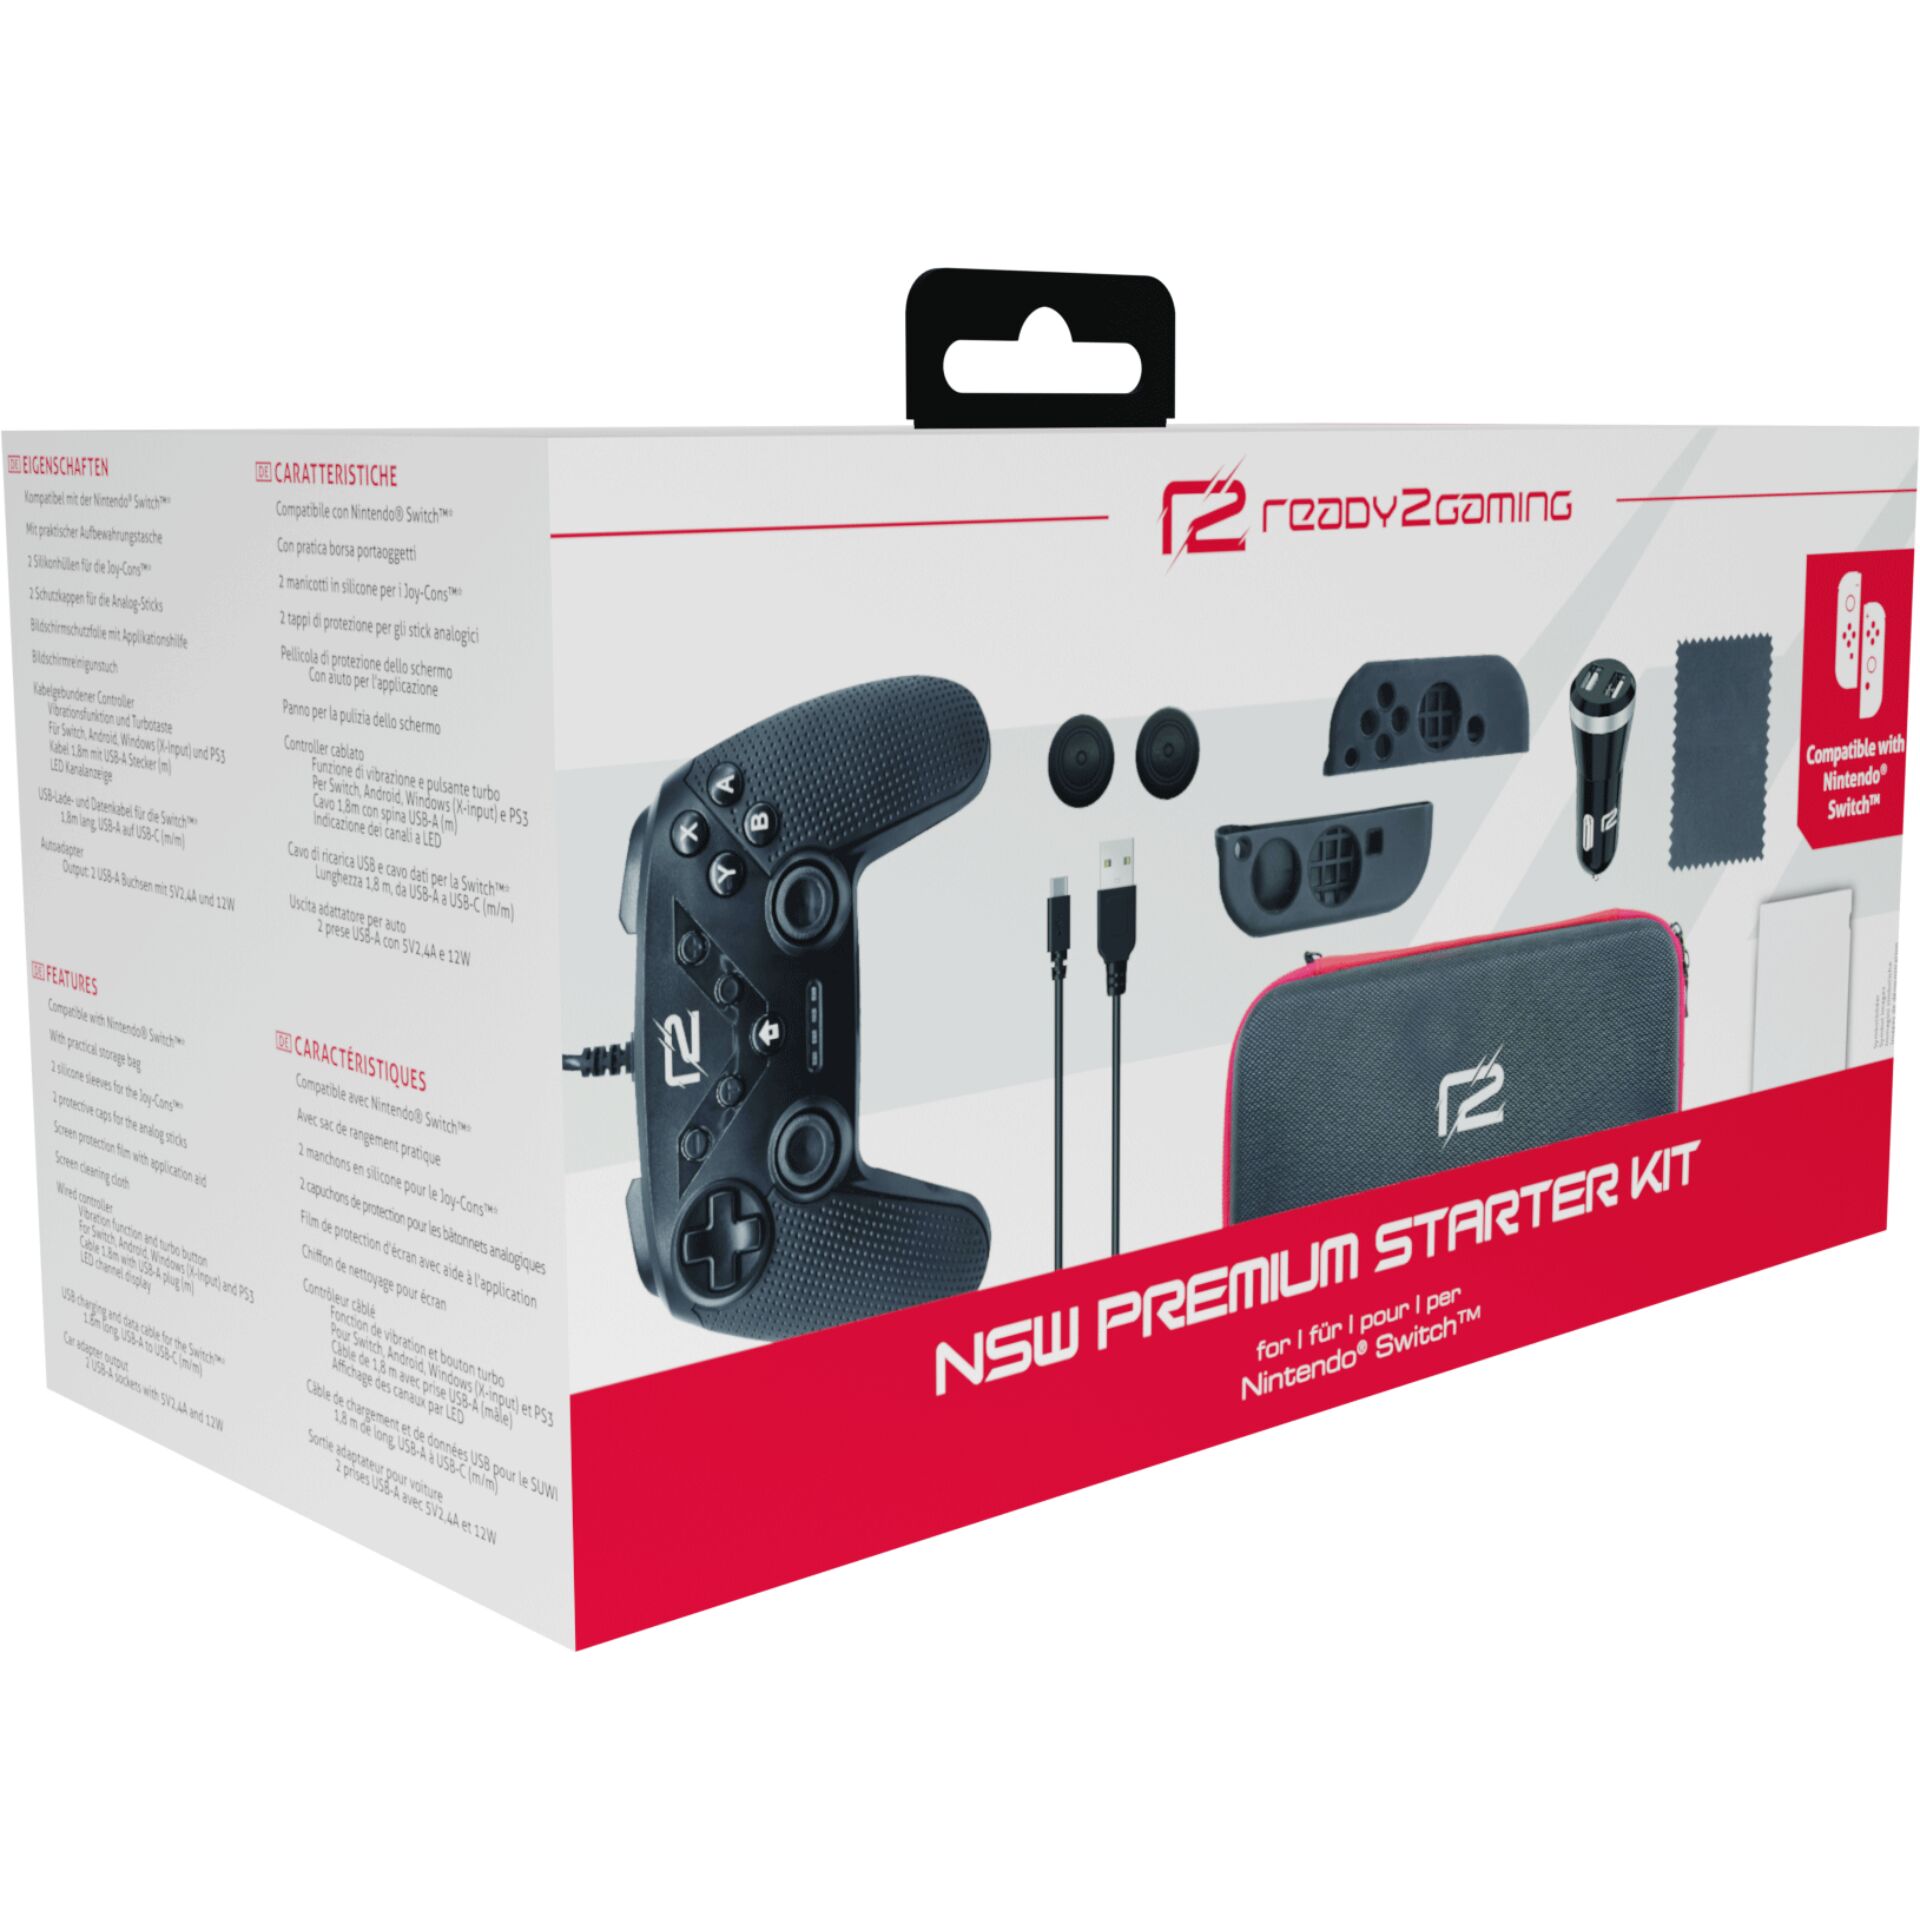 Ready2gaming -Nintendo Switch Premium Starter Kit (R2GNSWKITP